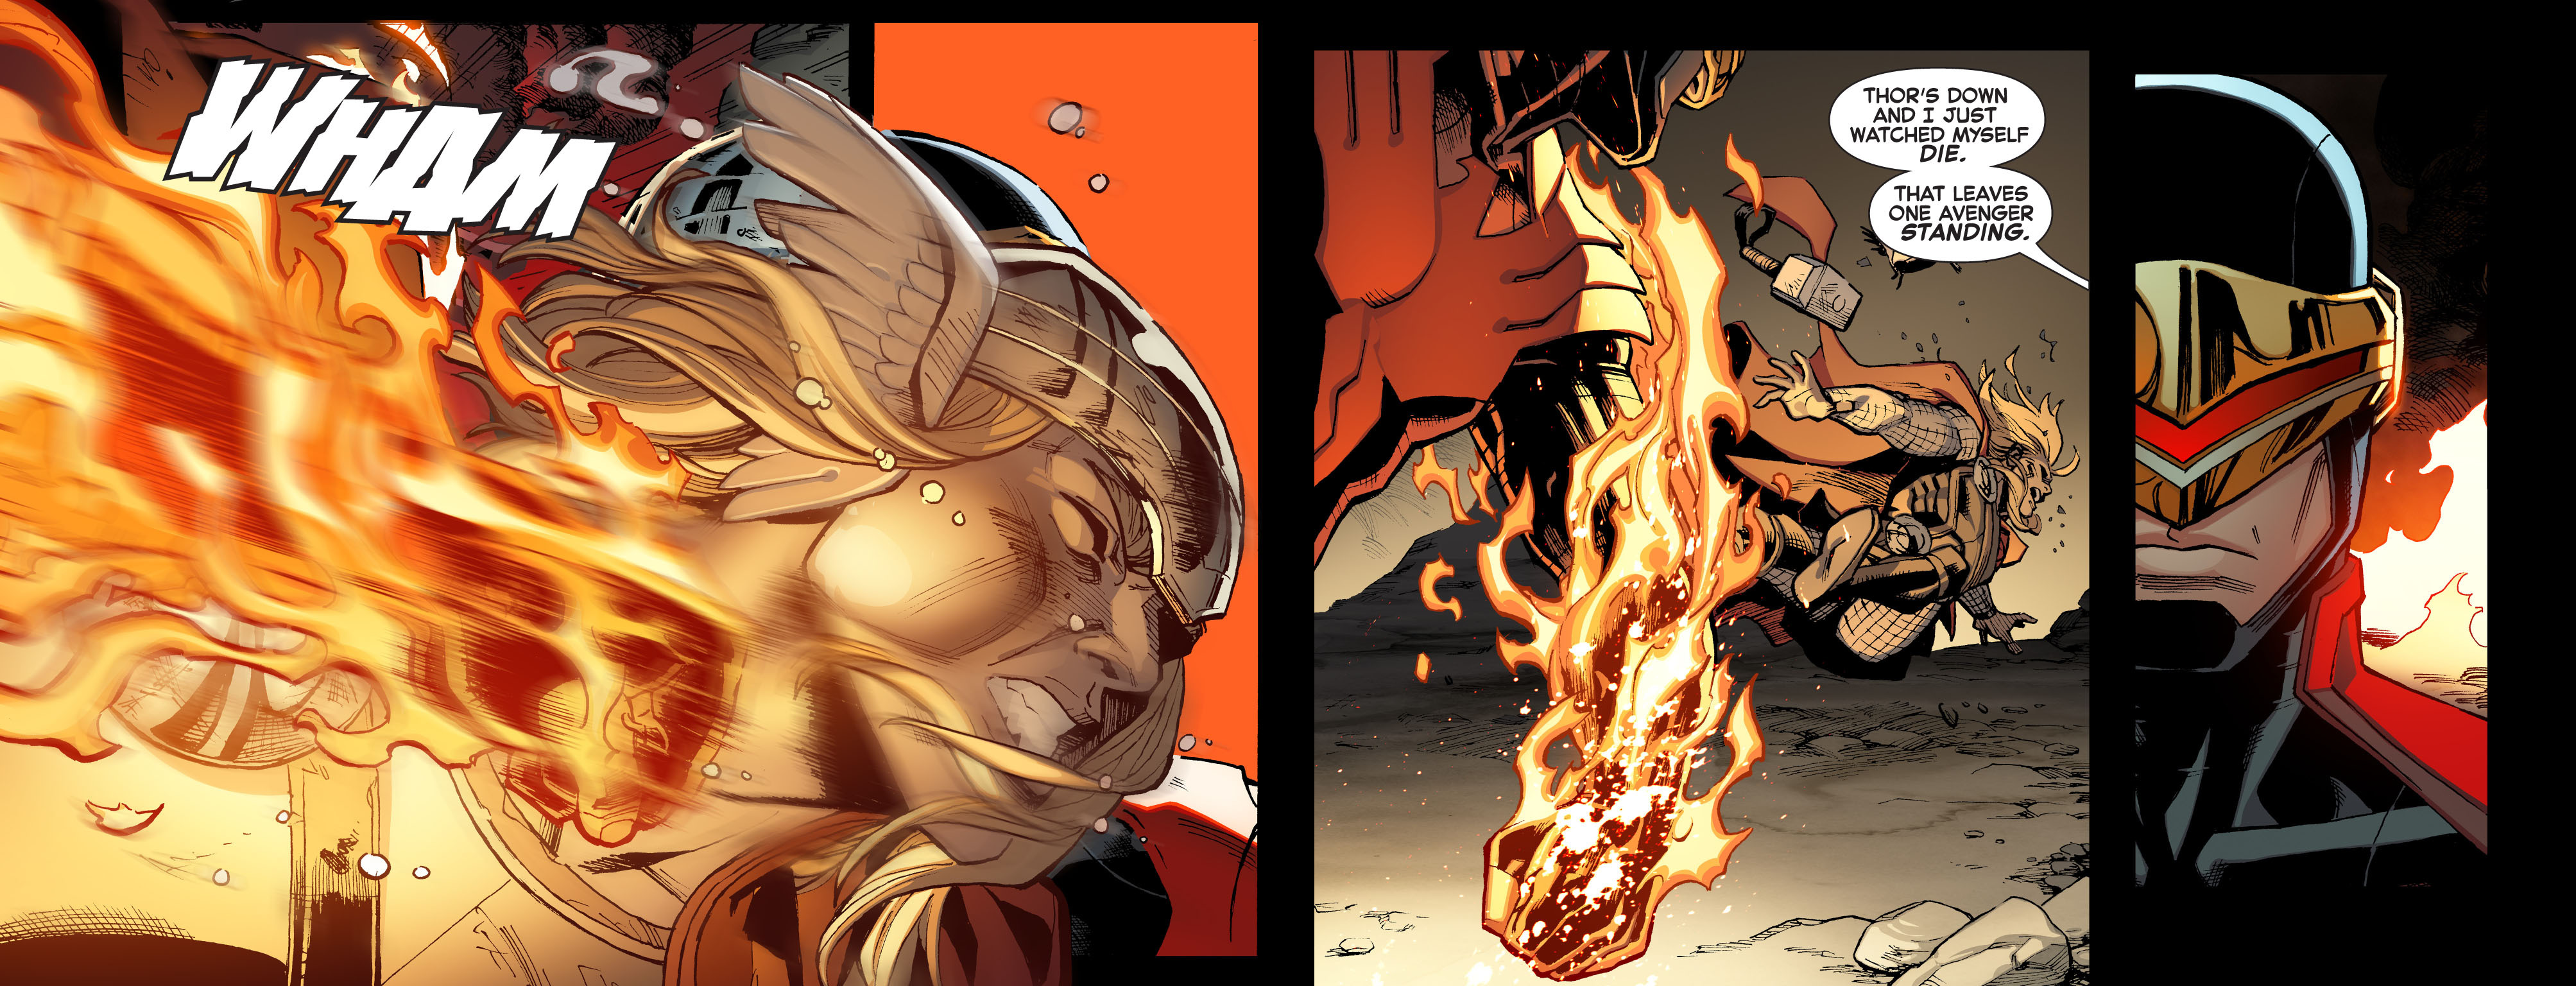 Read online Avengers vs. X-Men: Infinite comic -  Issue #10 - 32